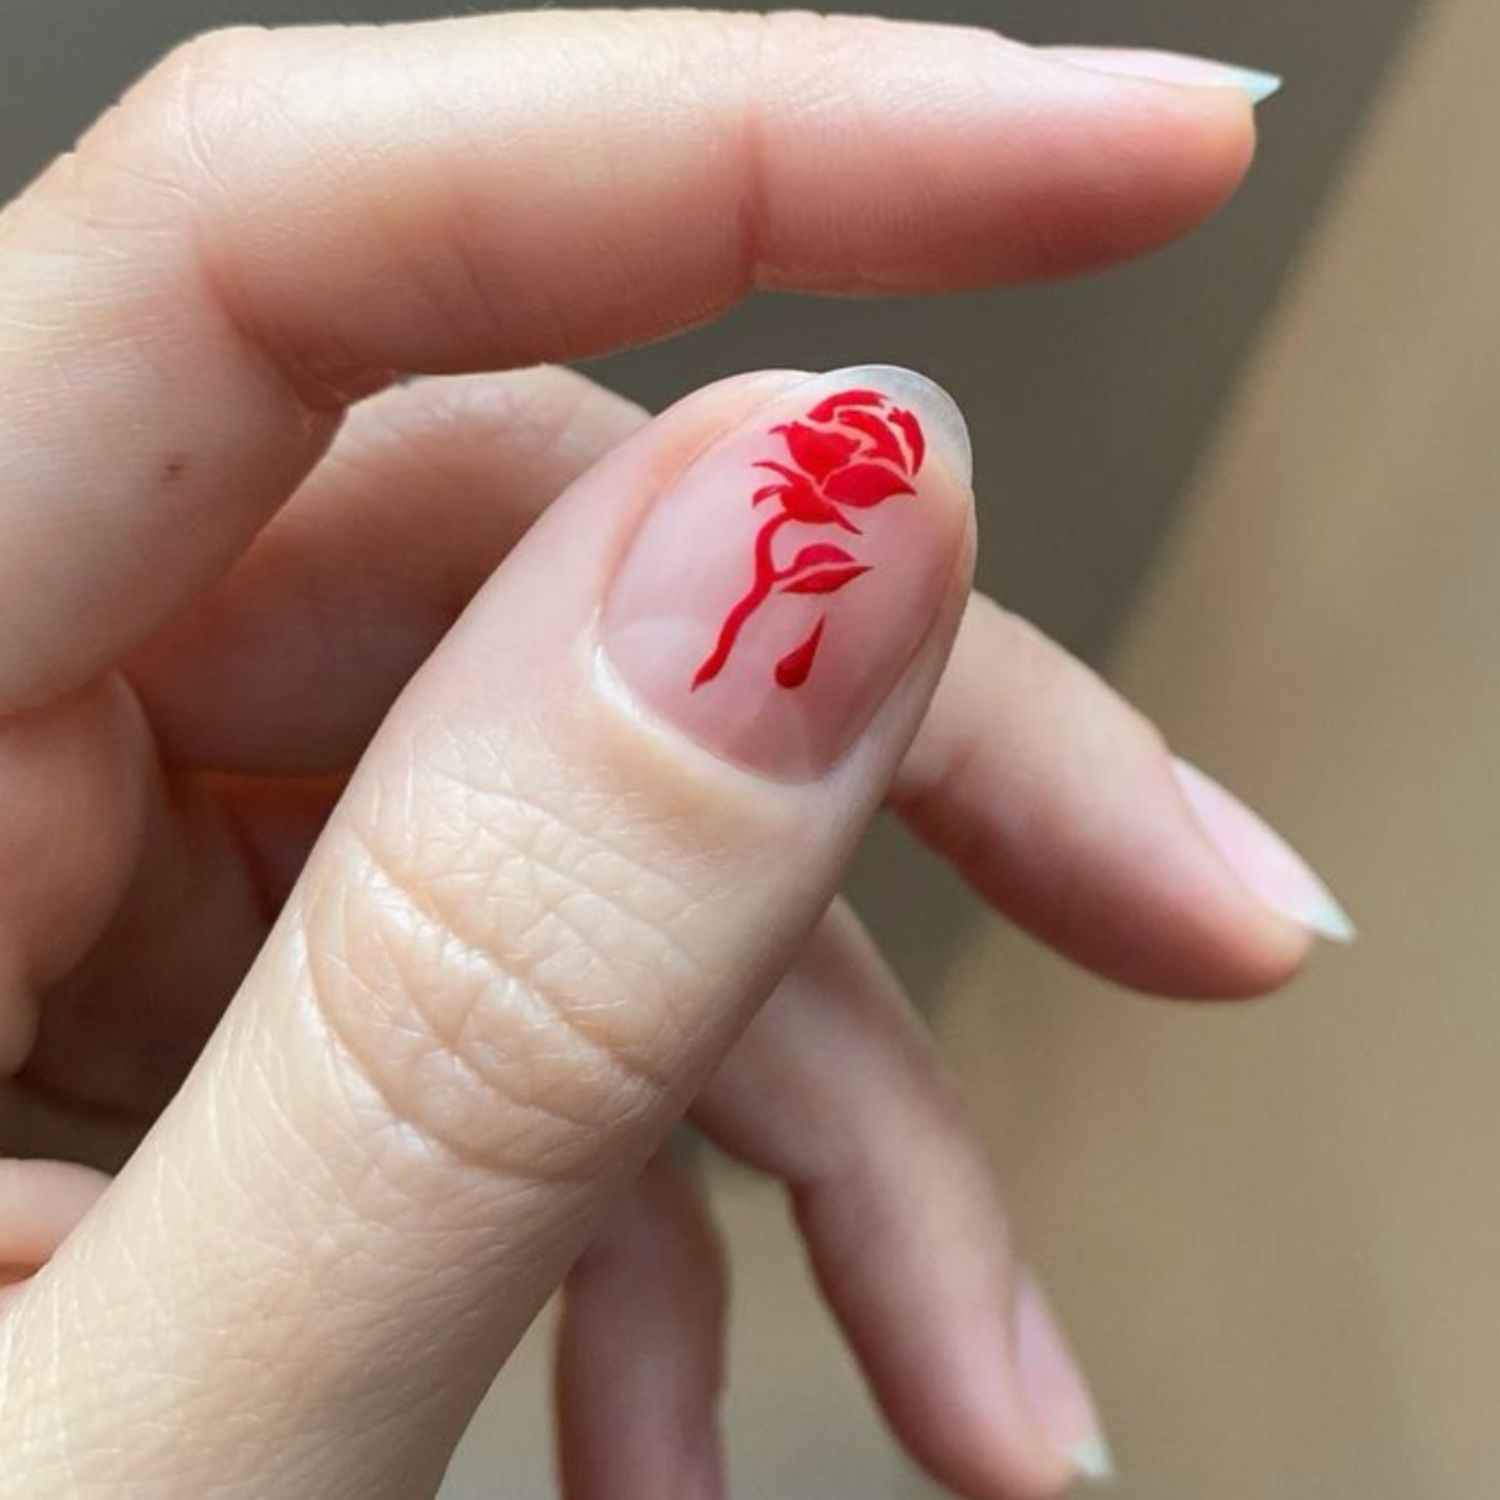 Um polegar nu com uma rosa vermelha desenhada em um estêncil.